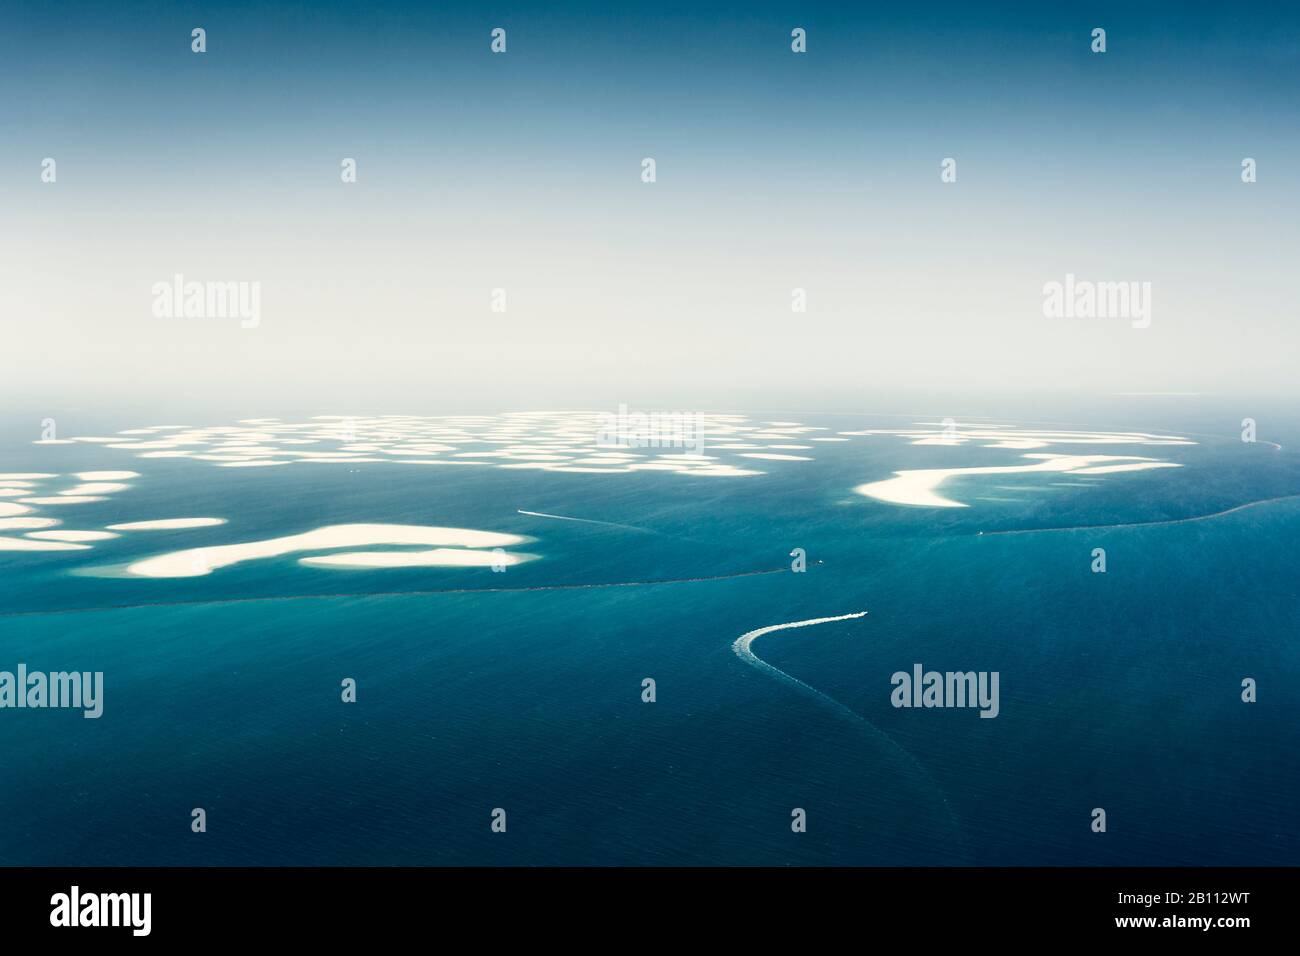 The World, artificial island off the coast of Dubai, UAE Stock Photo